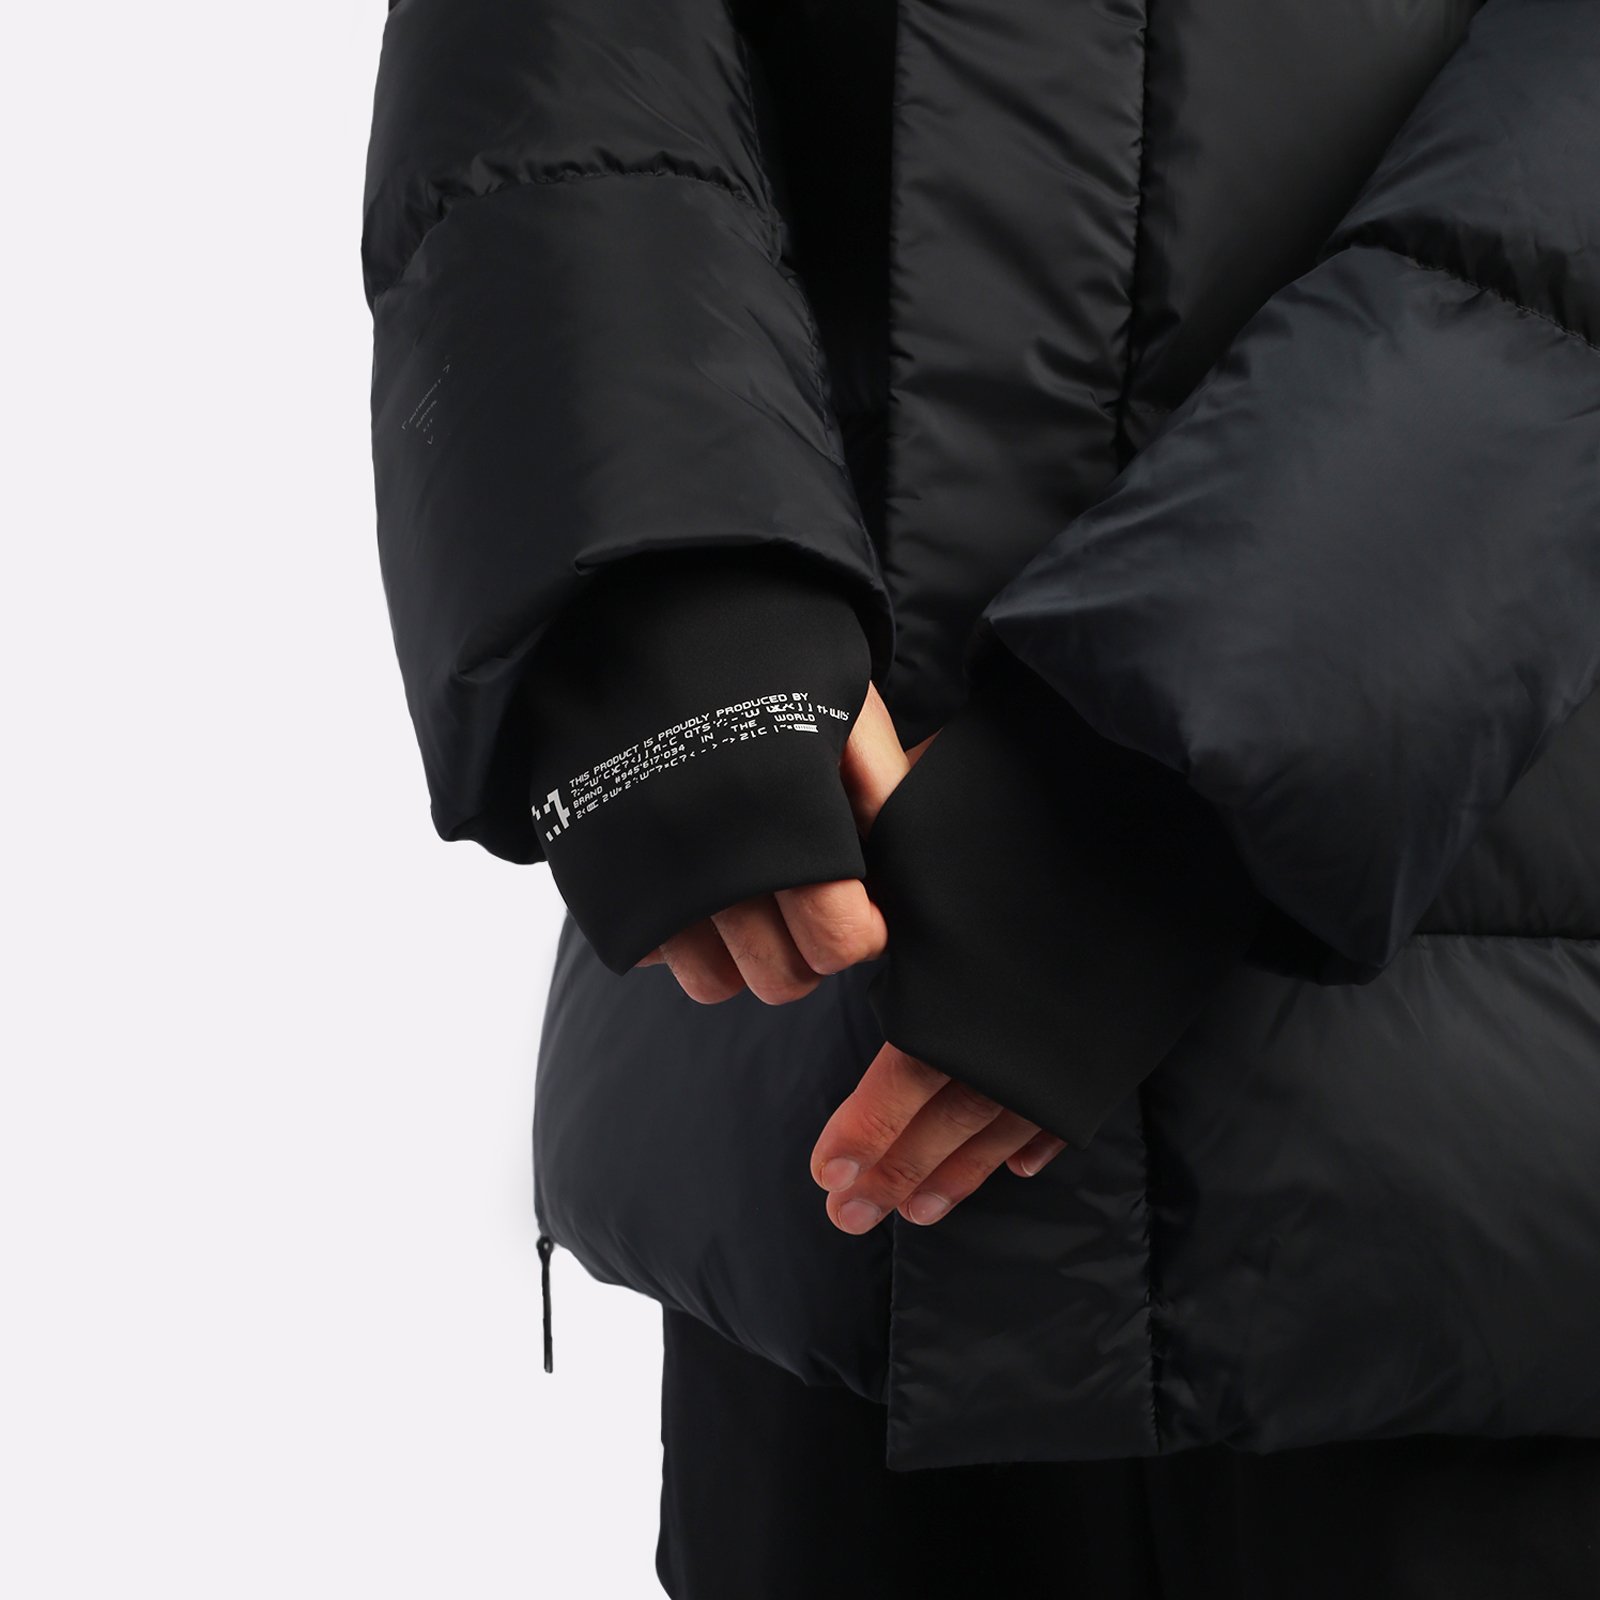 мужская куртка KRAKATAU Aitken  (Qm437-1-черный)  - цена, описание, фото 6